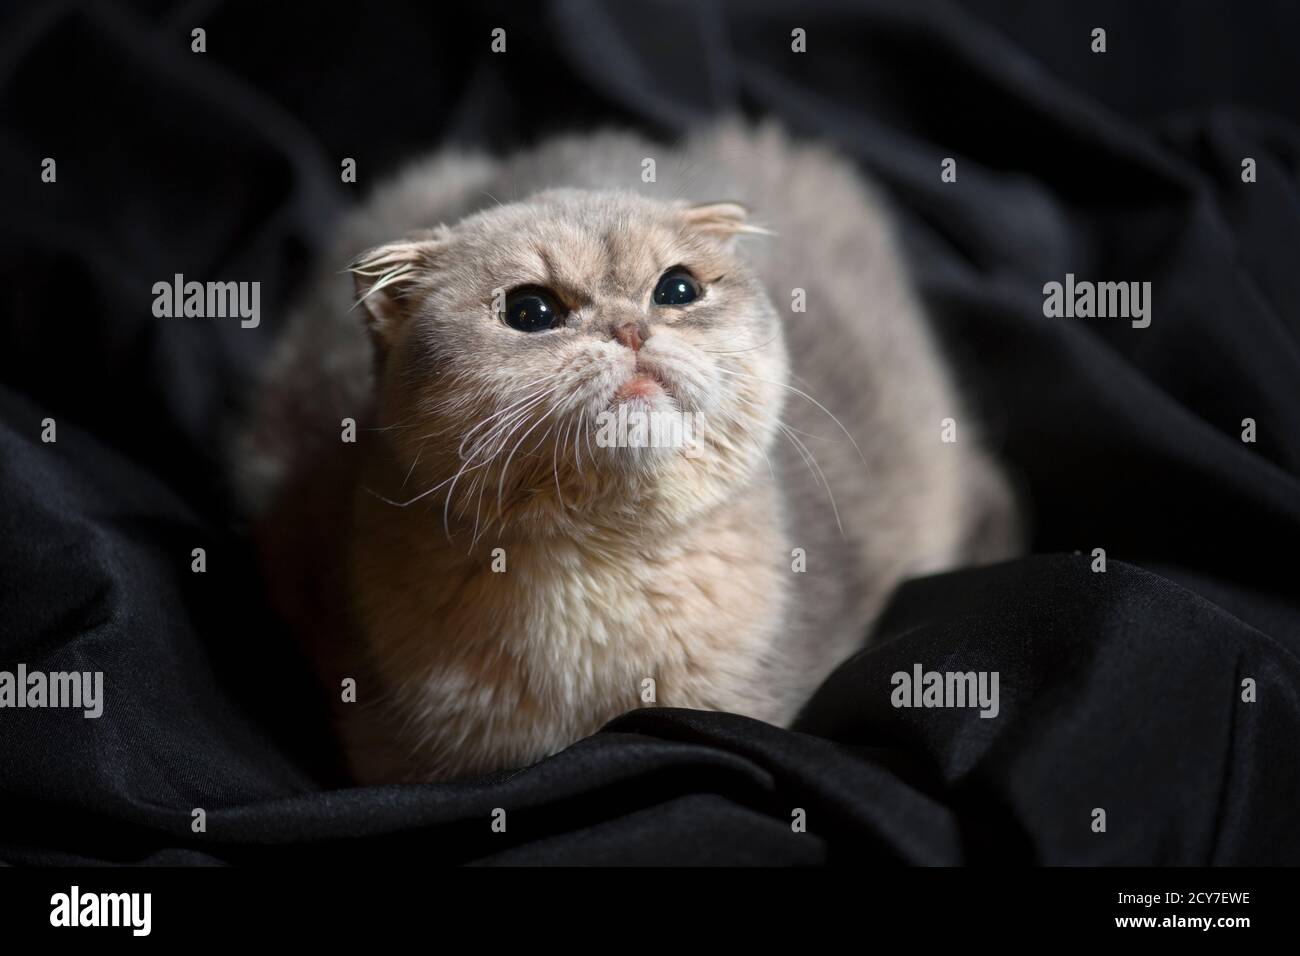 Gattino scozzese color crema, seduto in tessuto scuro, guardando verso l'alto sopra la fotocamera. Foto Stock